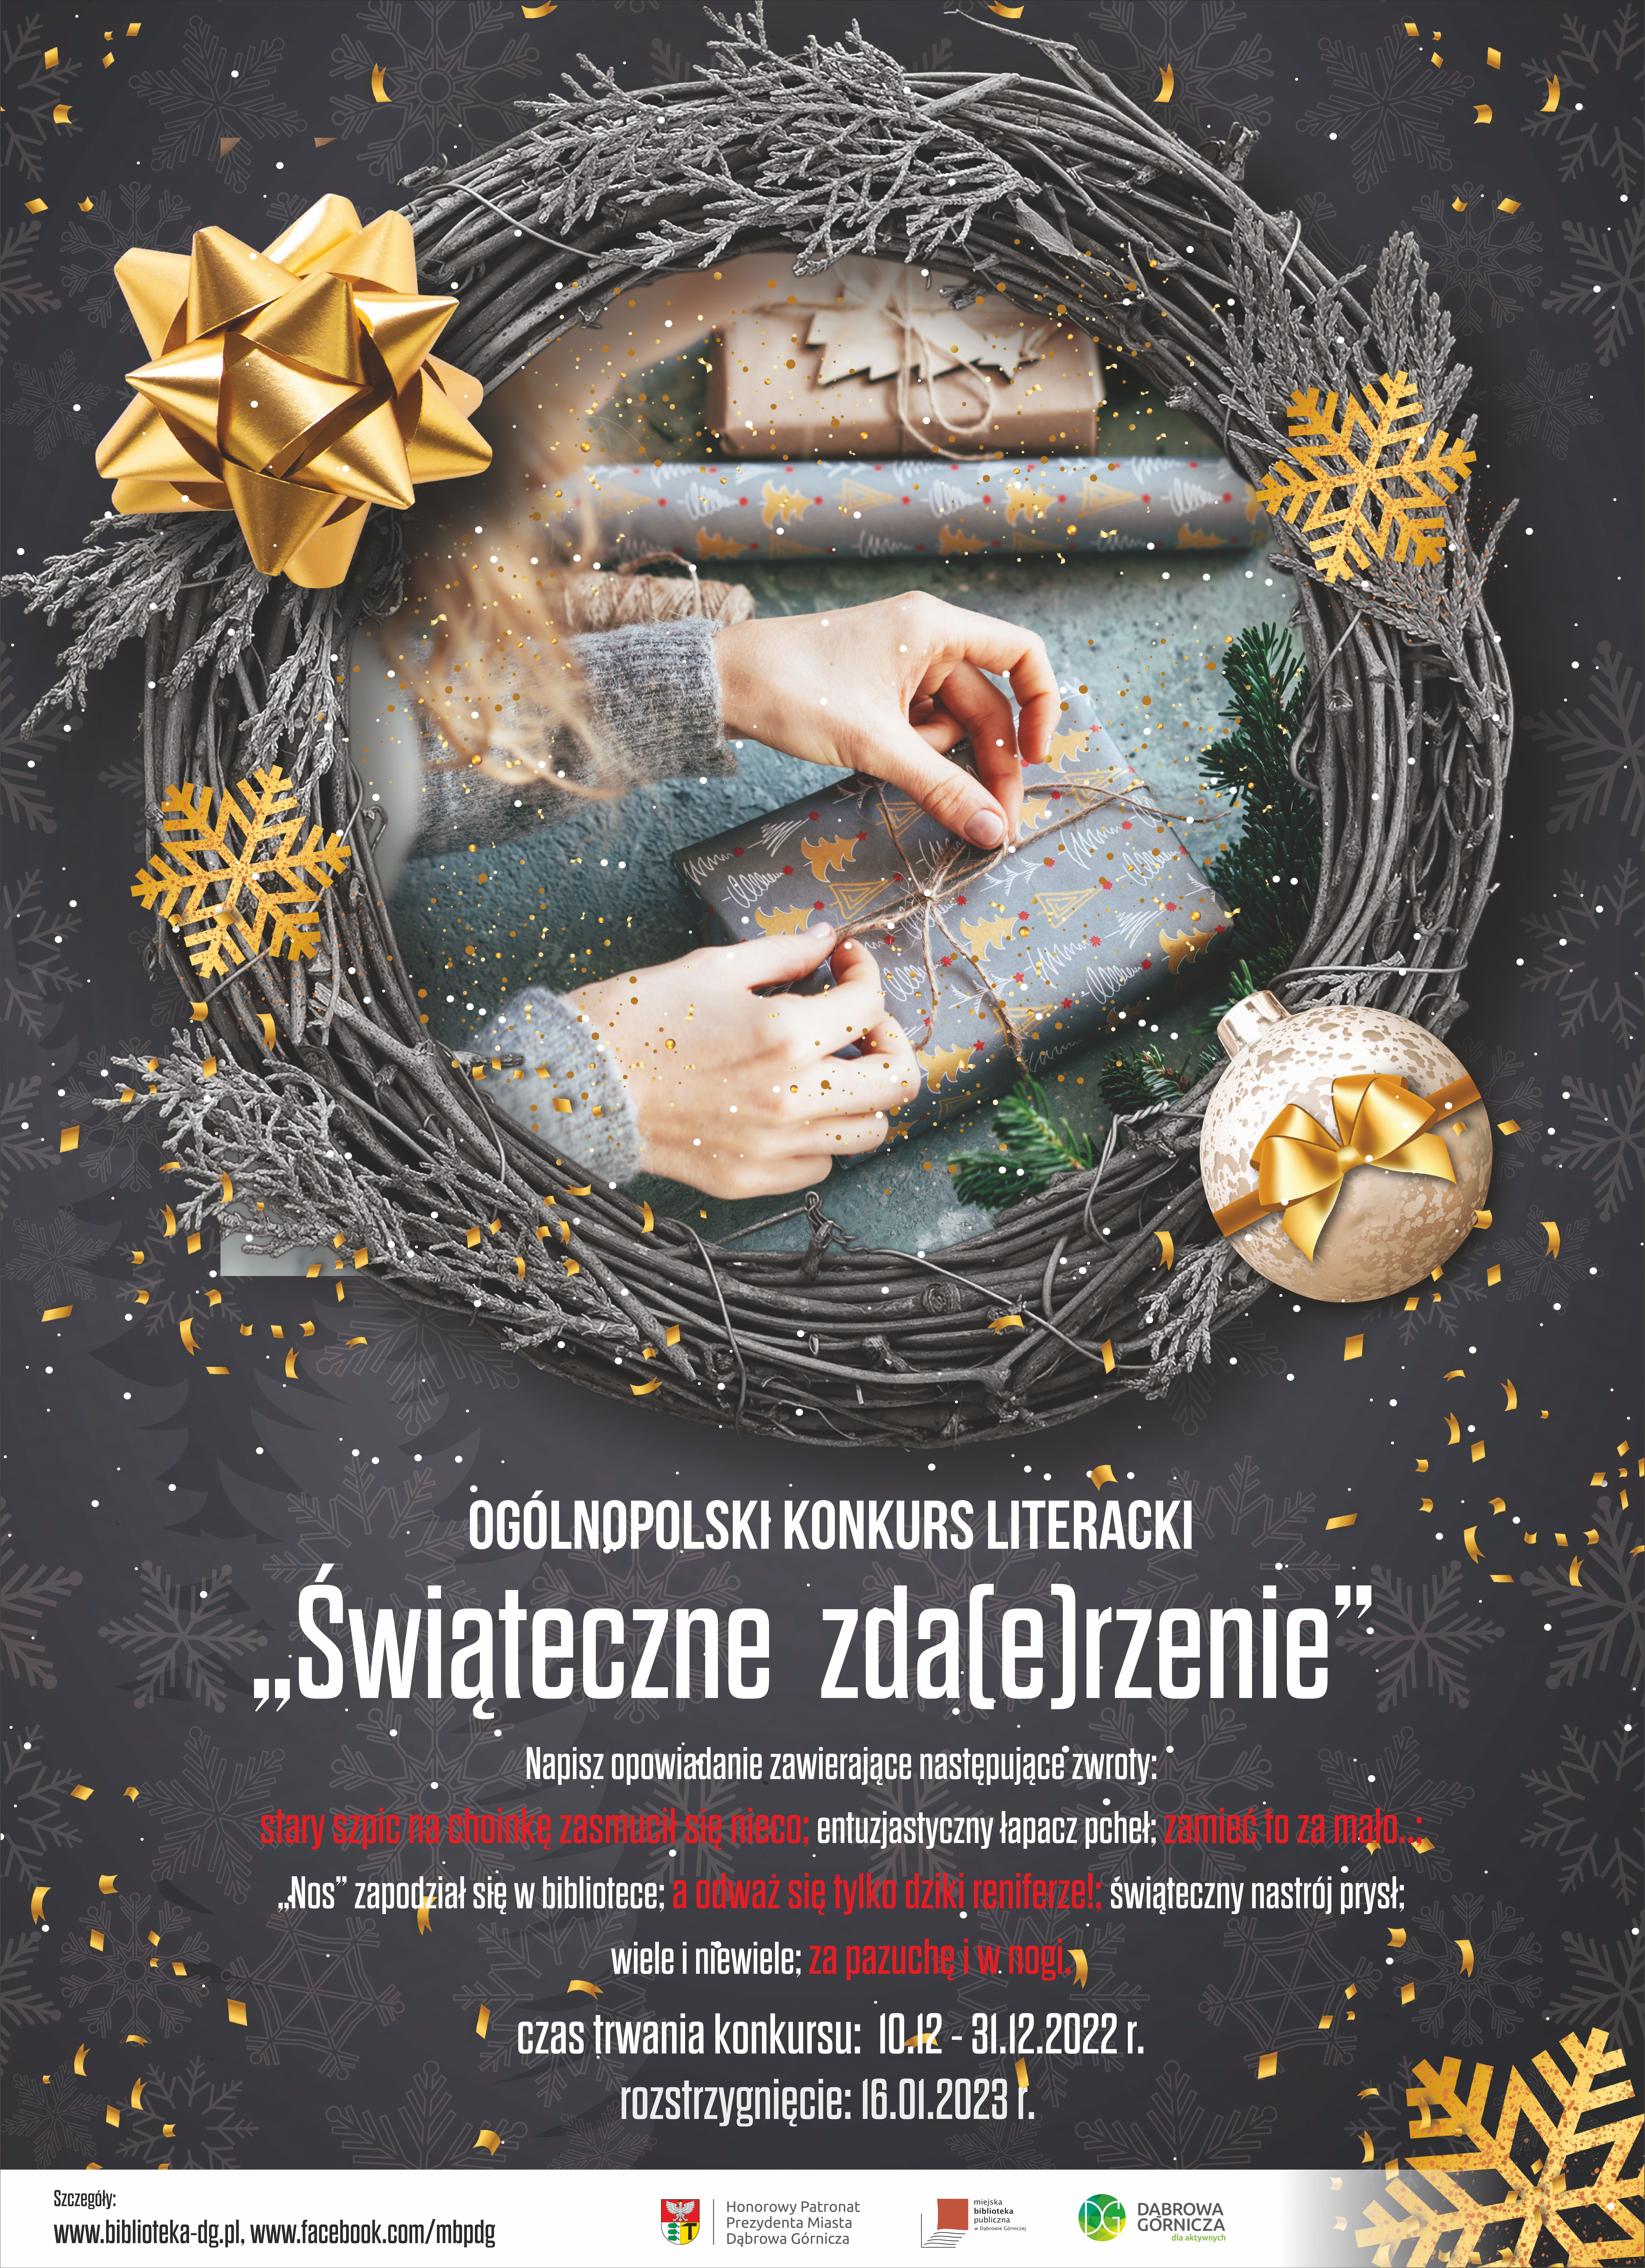 Weź udział w konkursie literackim “Świąteczne zda(e)rzenie”!